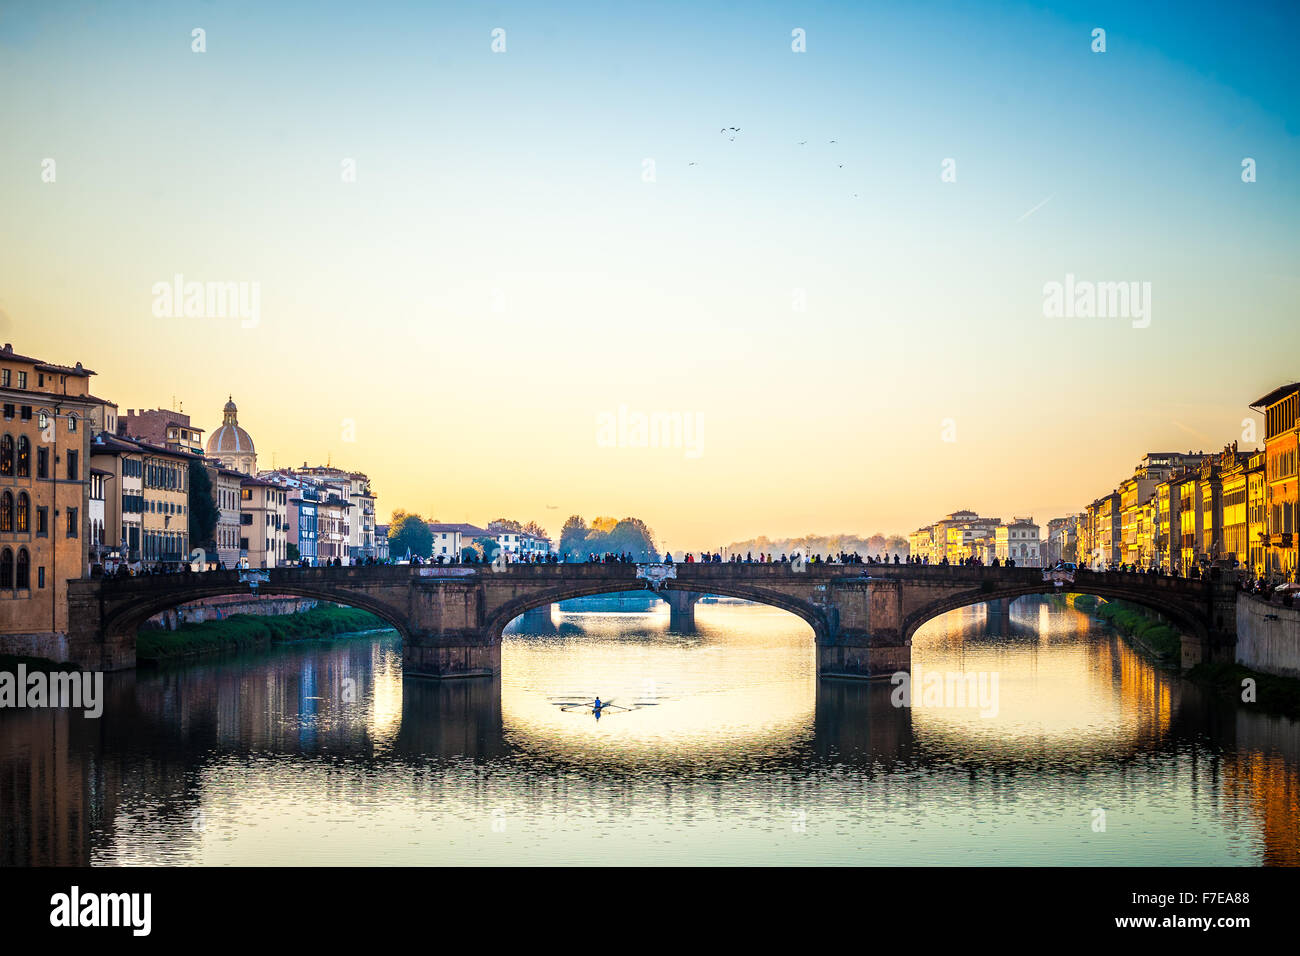 El increíble Ponte Vecchio sobre el río Arno en Florencia, Italia. Bajo el puente un tío remo Foto de stock